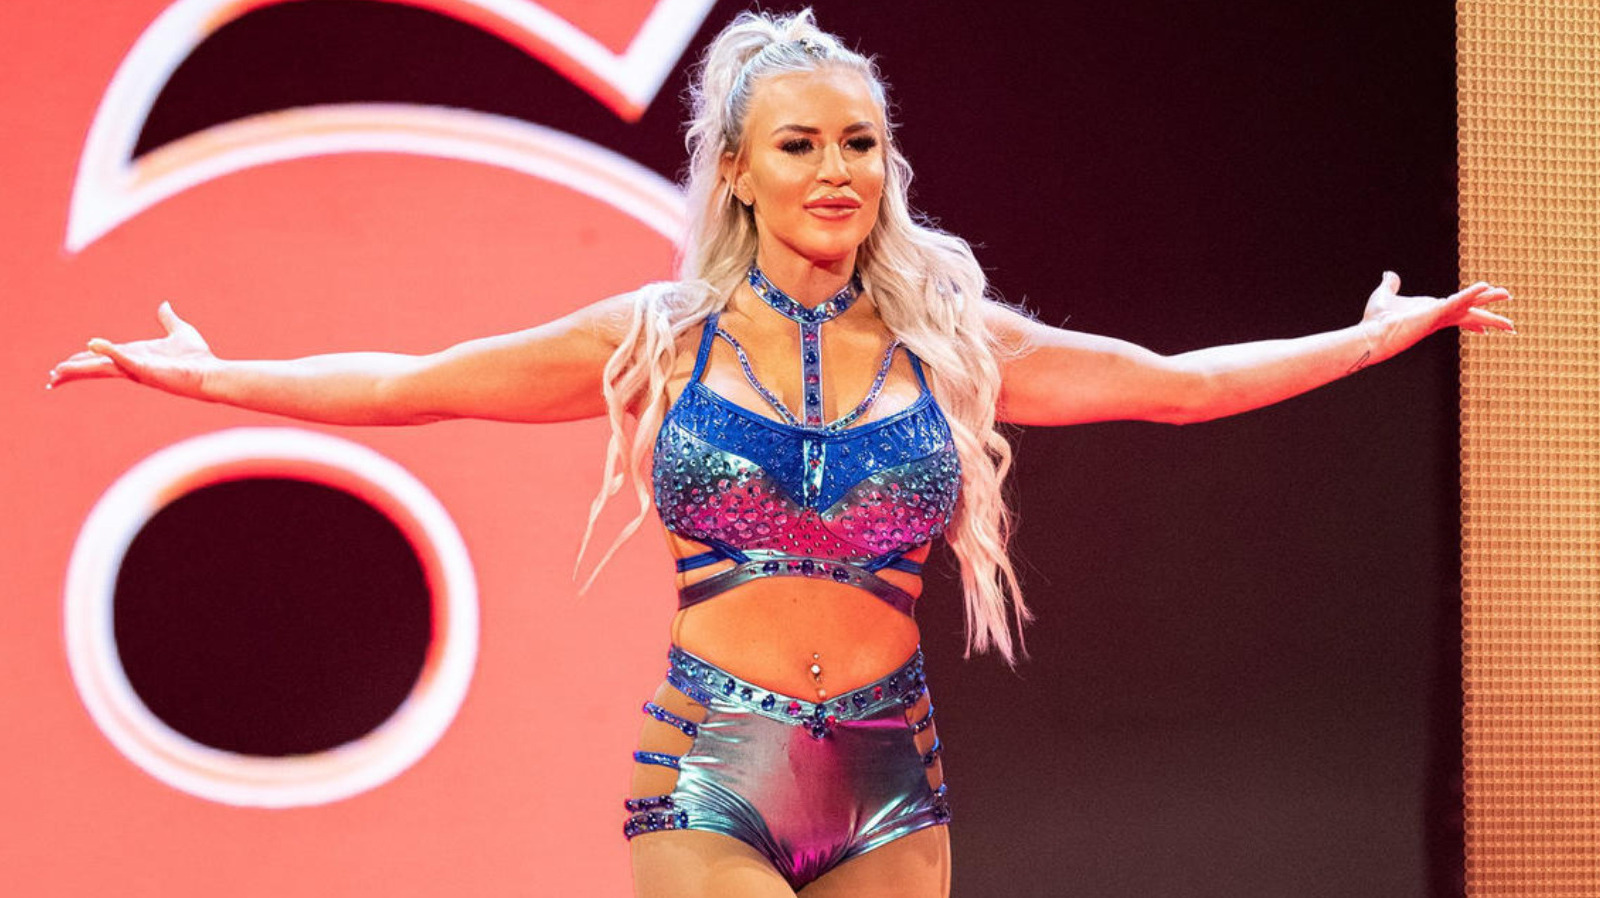 WWE lanza a la estrella de NXT y ex campeona 15 veces 24 horas al día, 7 días a la semana, Dana Brooke